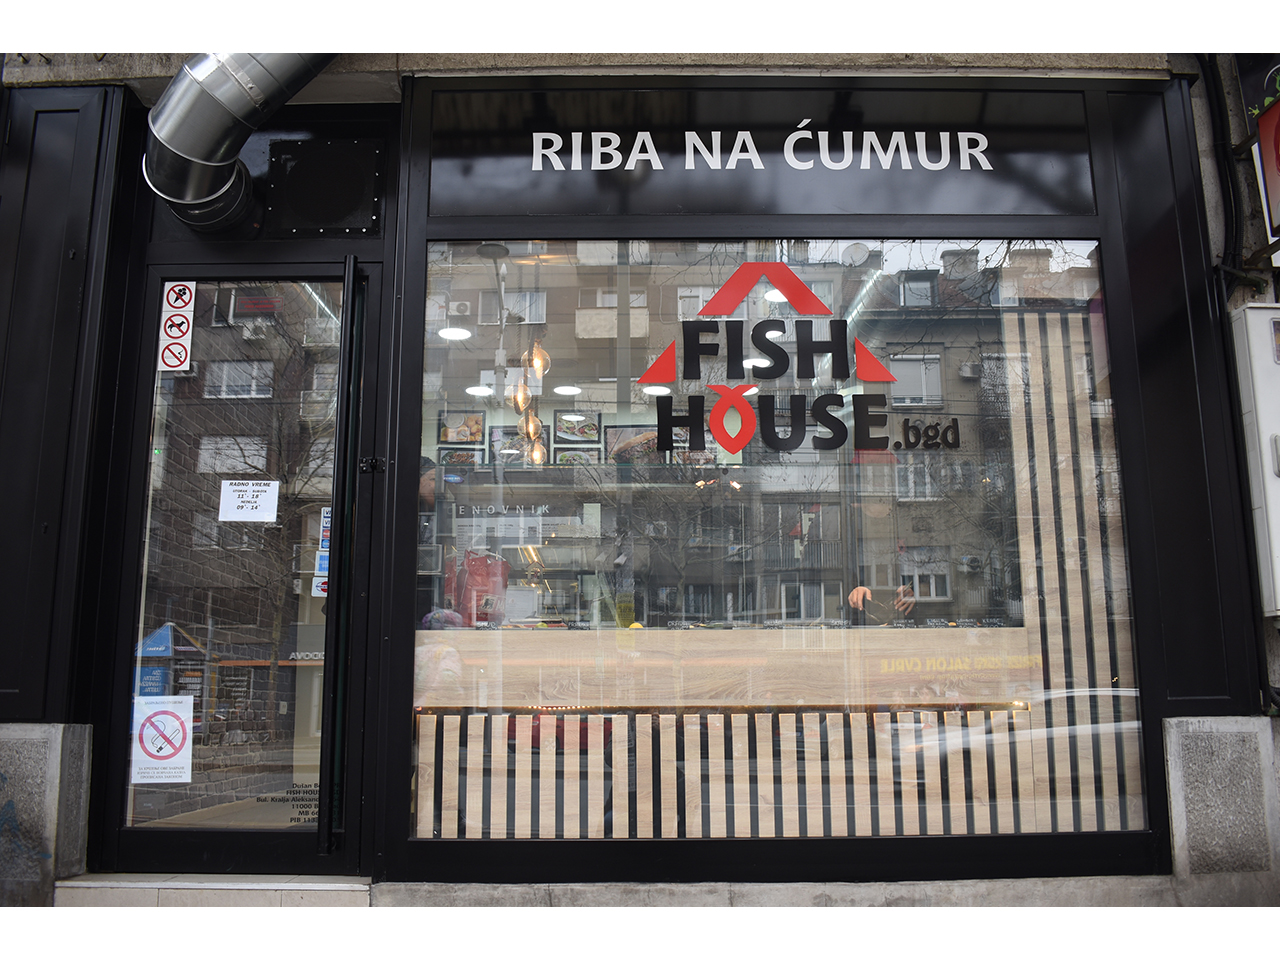 FISH HOUSE BGD - RIBA NA ĆUMUR Ribarnice, ribarstvo Beograd - Slika 1